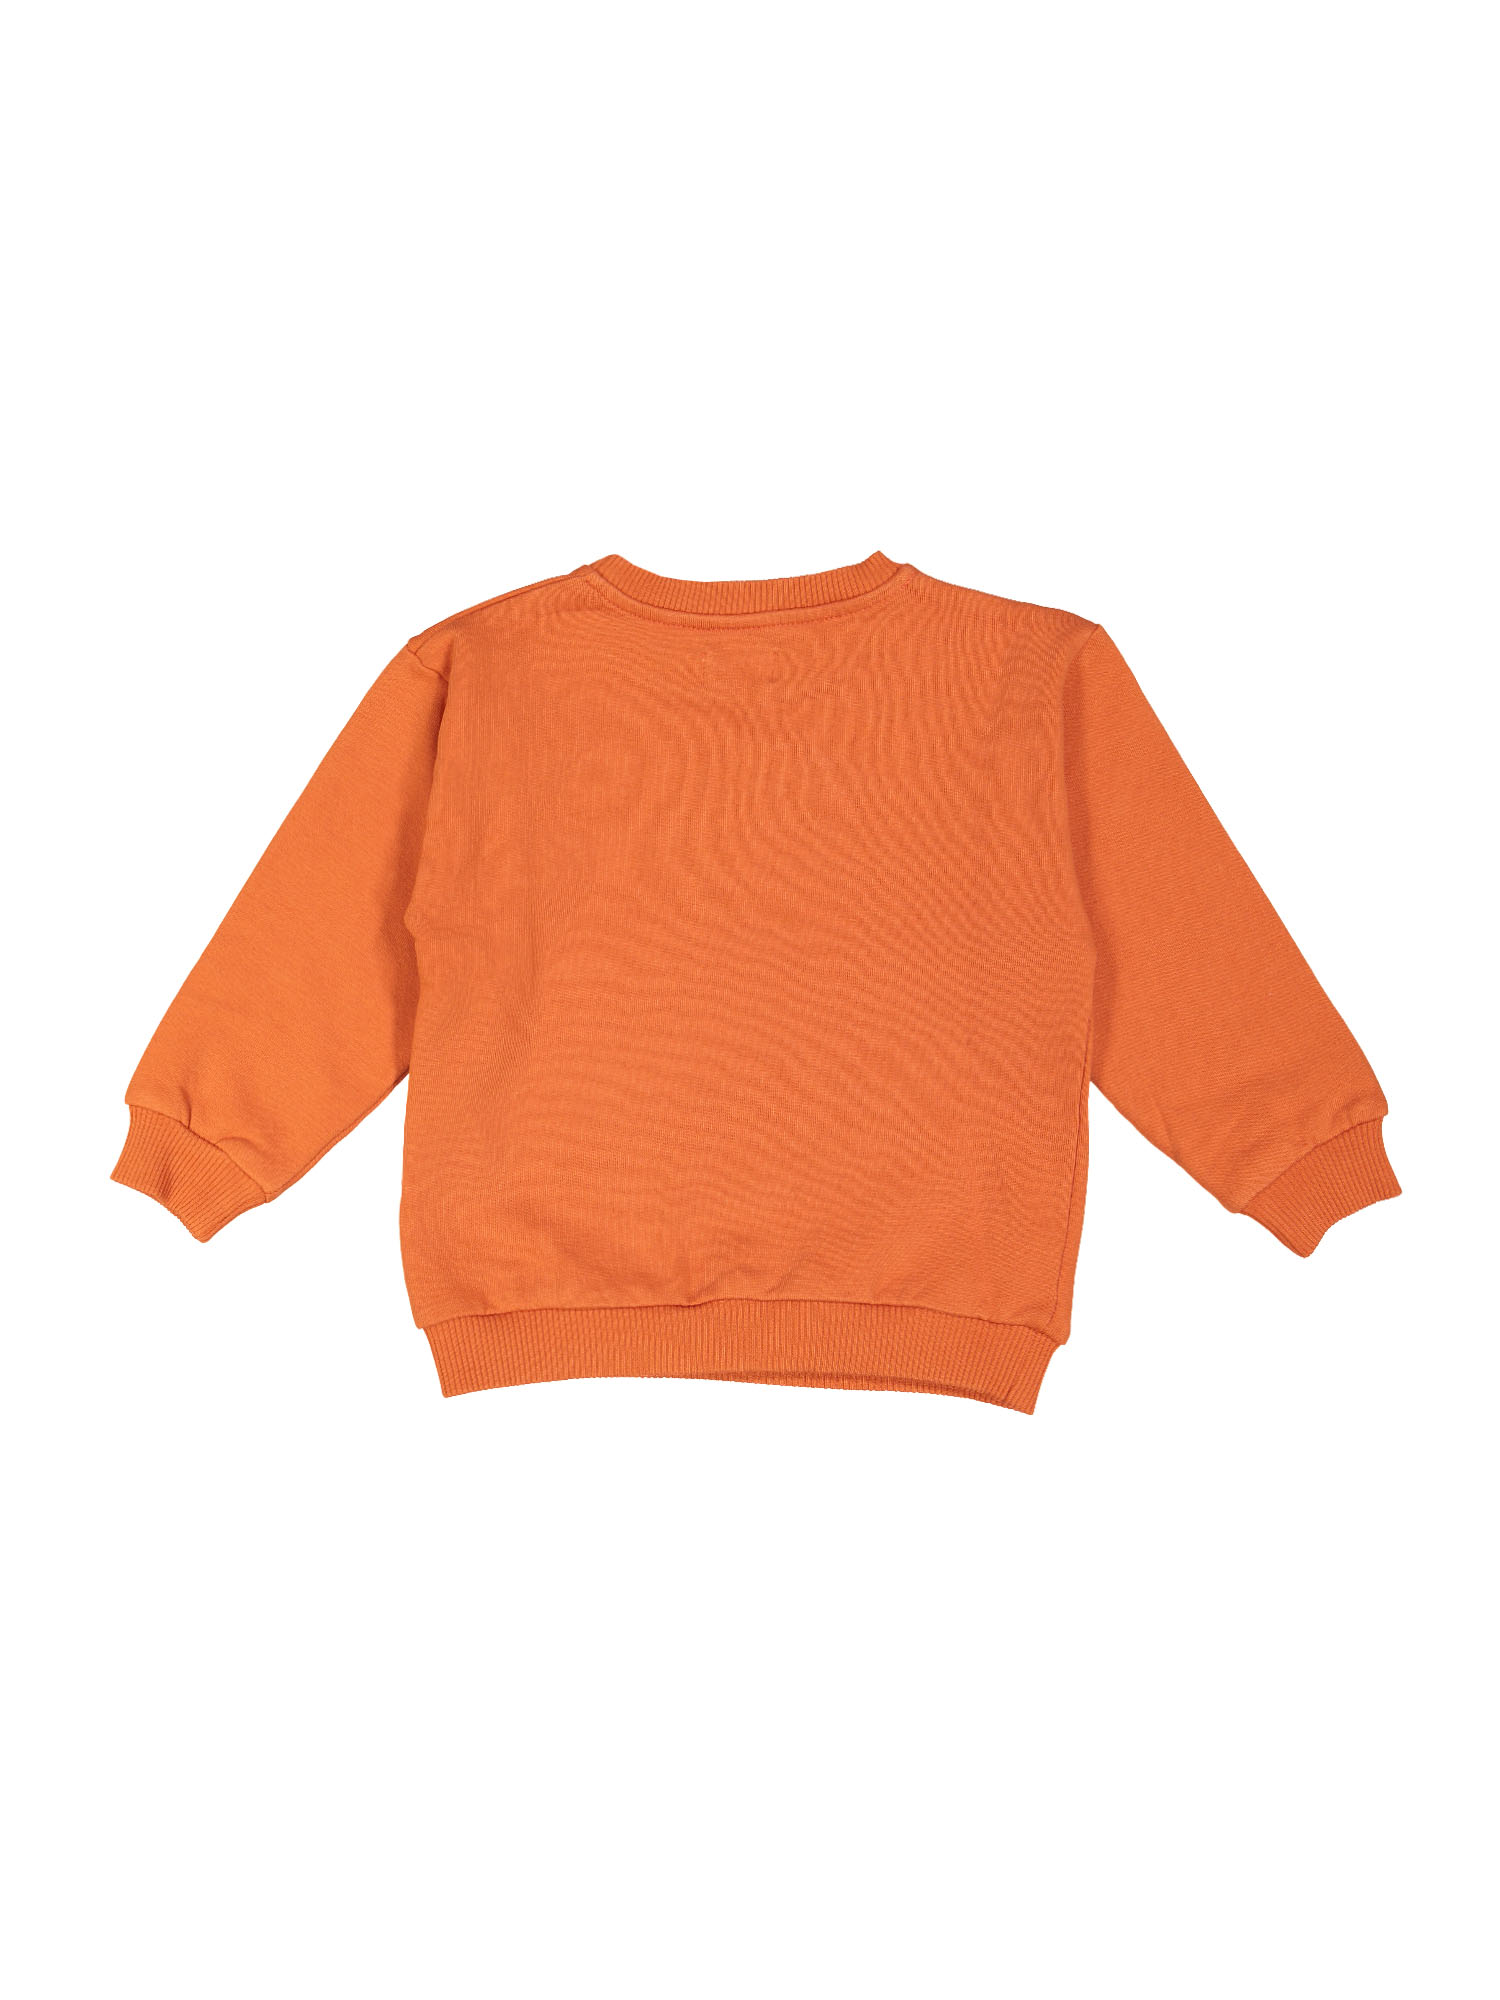 sweater boogie woogie oranje 05j